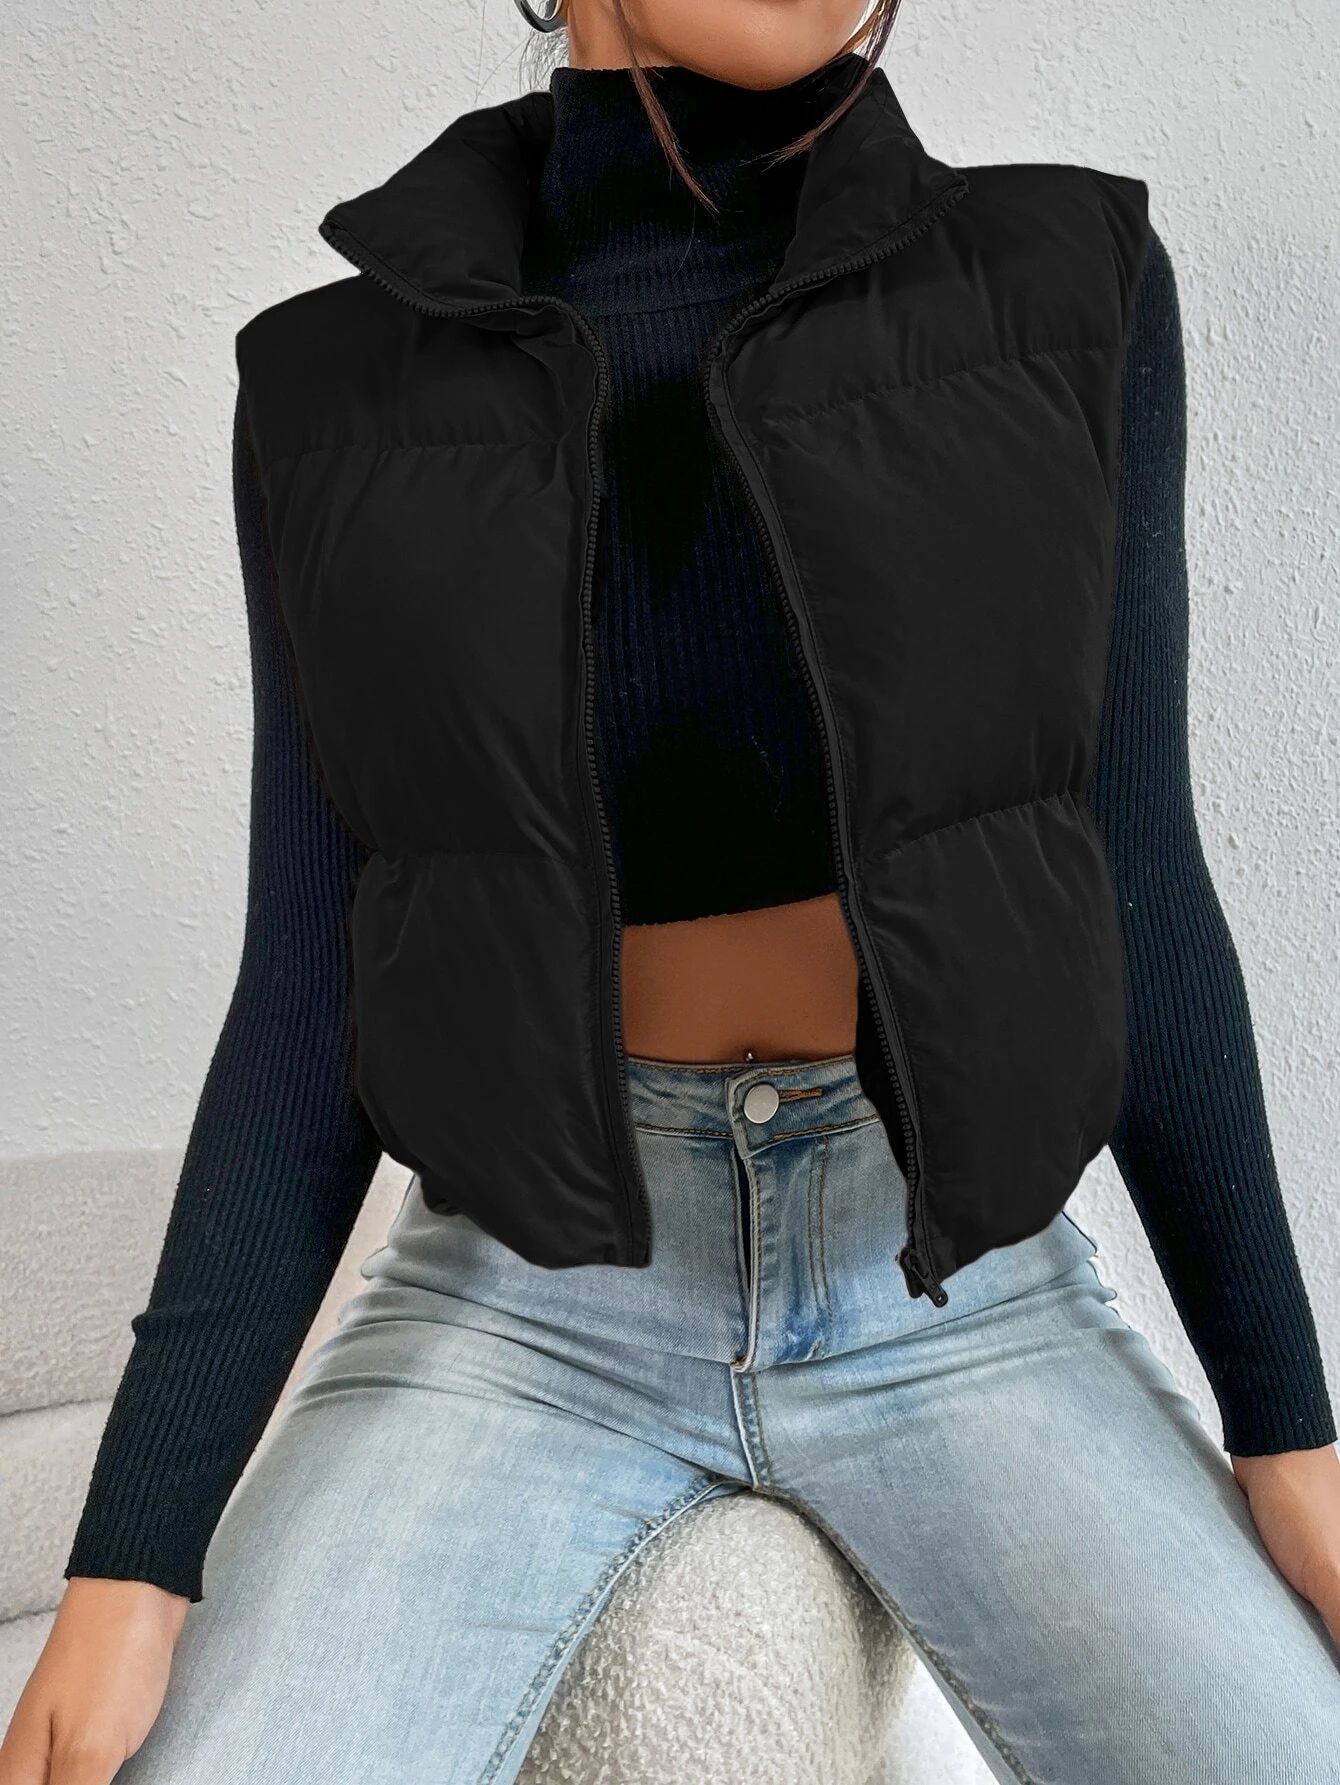 SHEIN EZwear Zip Up Puffer Vest Coat | SHEIN